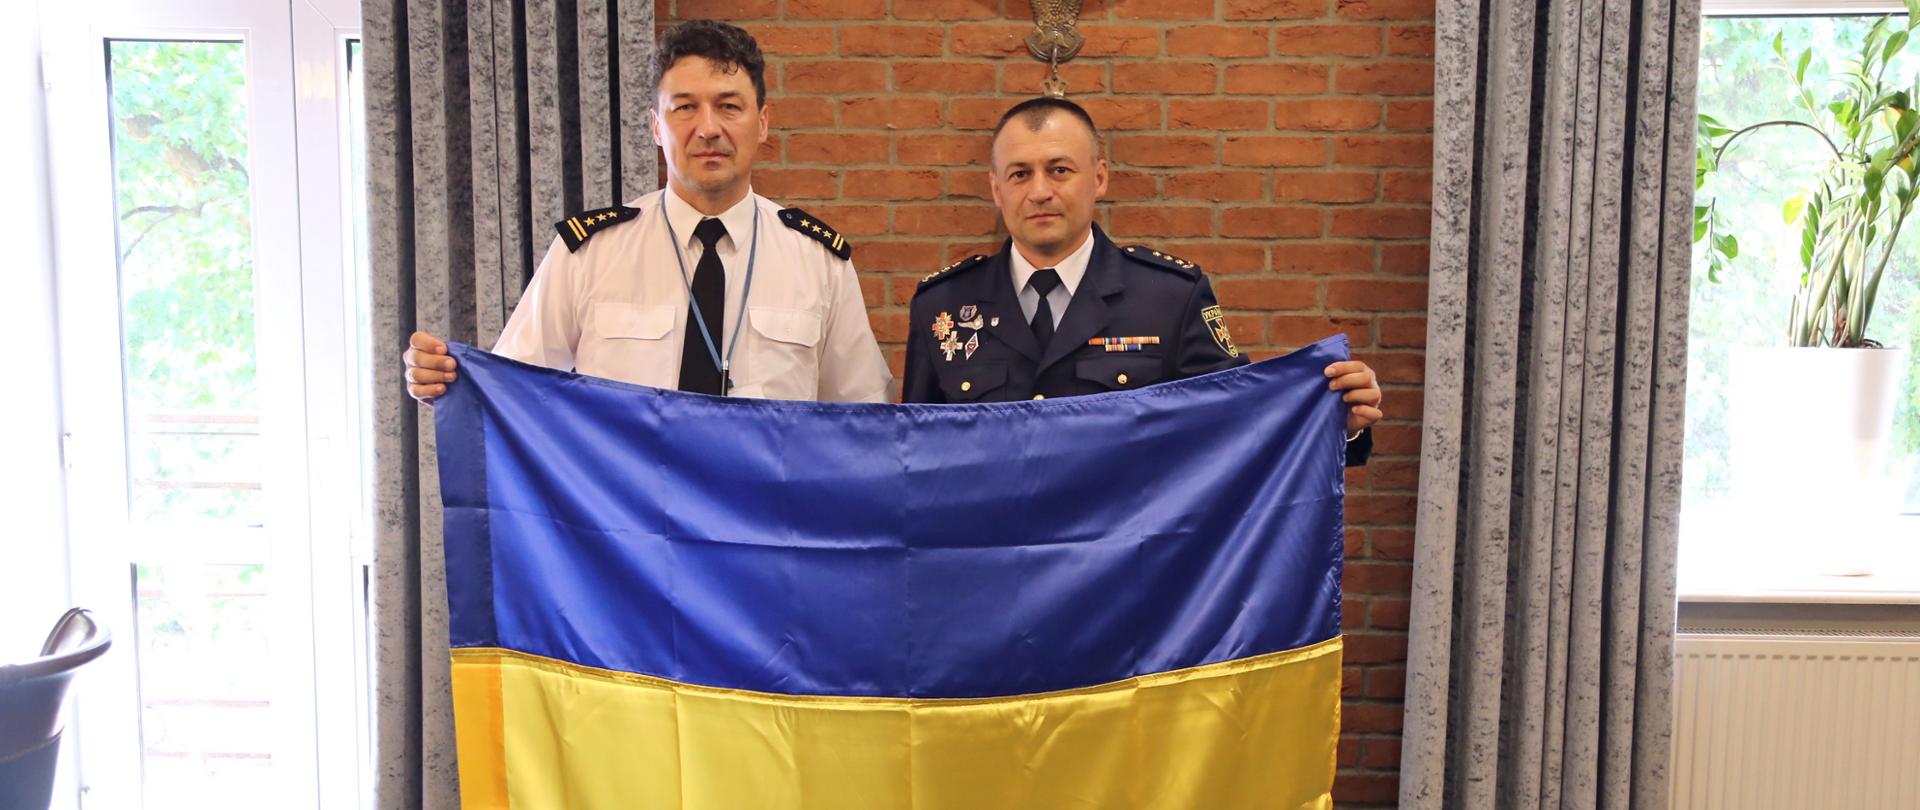 Na zdjęciu po lewej Komendant Centralnej Szkoły PSP, po jego lewej stronie płk. Rusłan Datsenko. Panowie wspólnie trzymają flagę Ukrainy